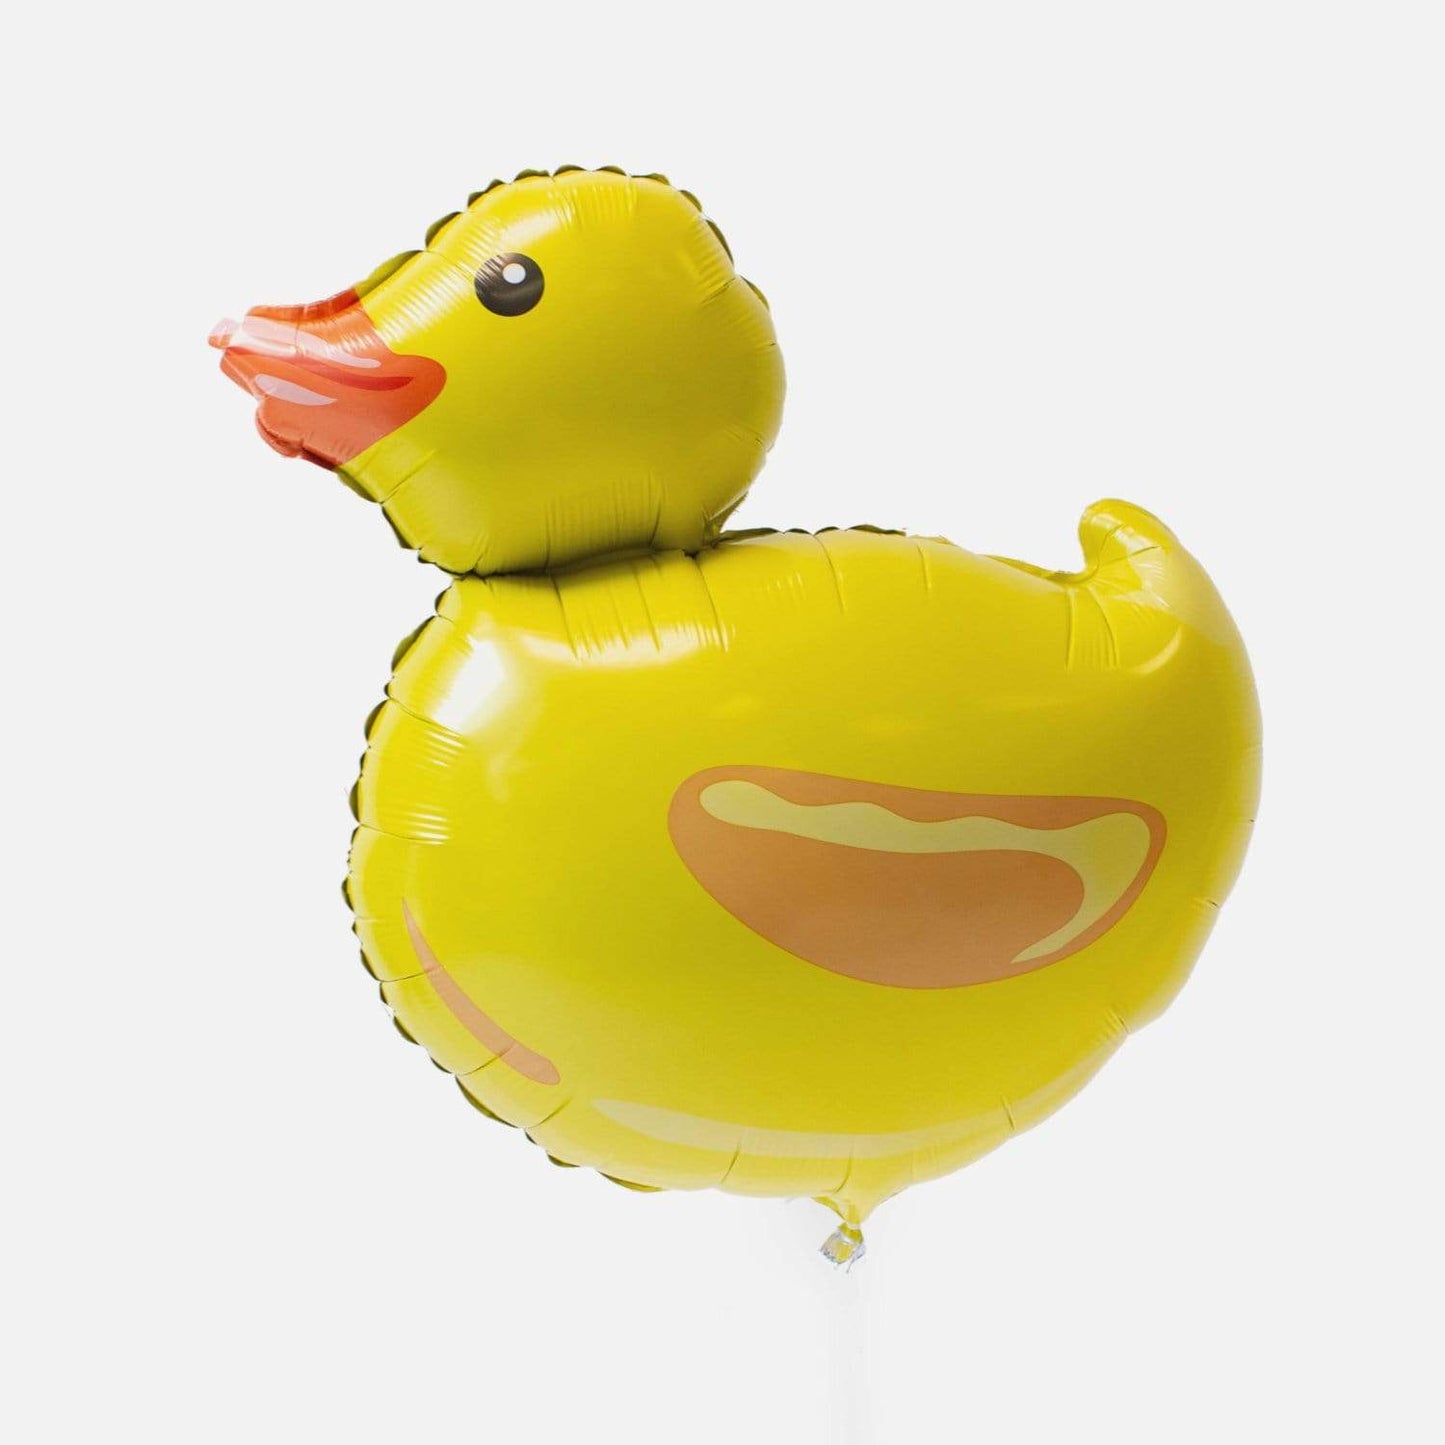 Giant Ducky Balloon | Rubber Duck Balloon UK Betallic